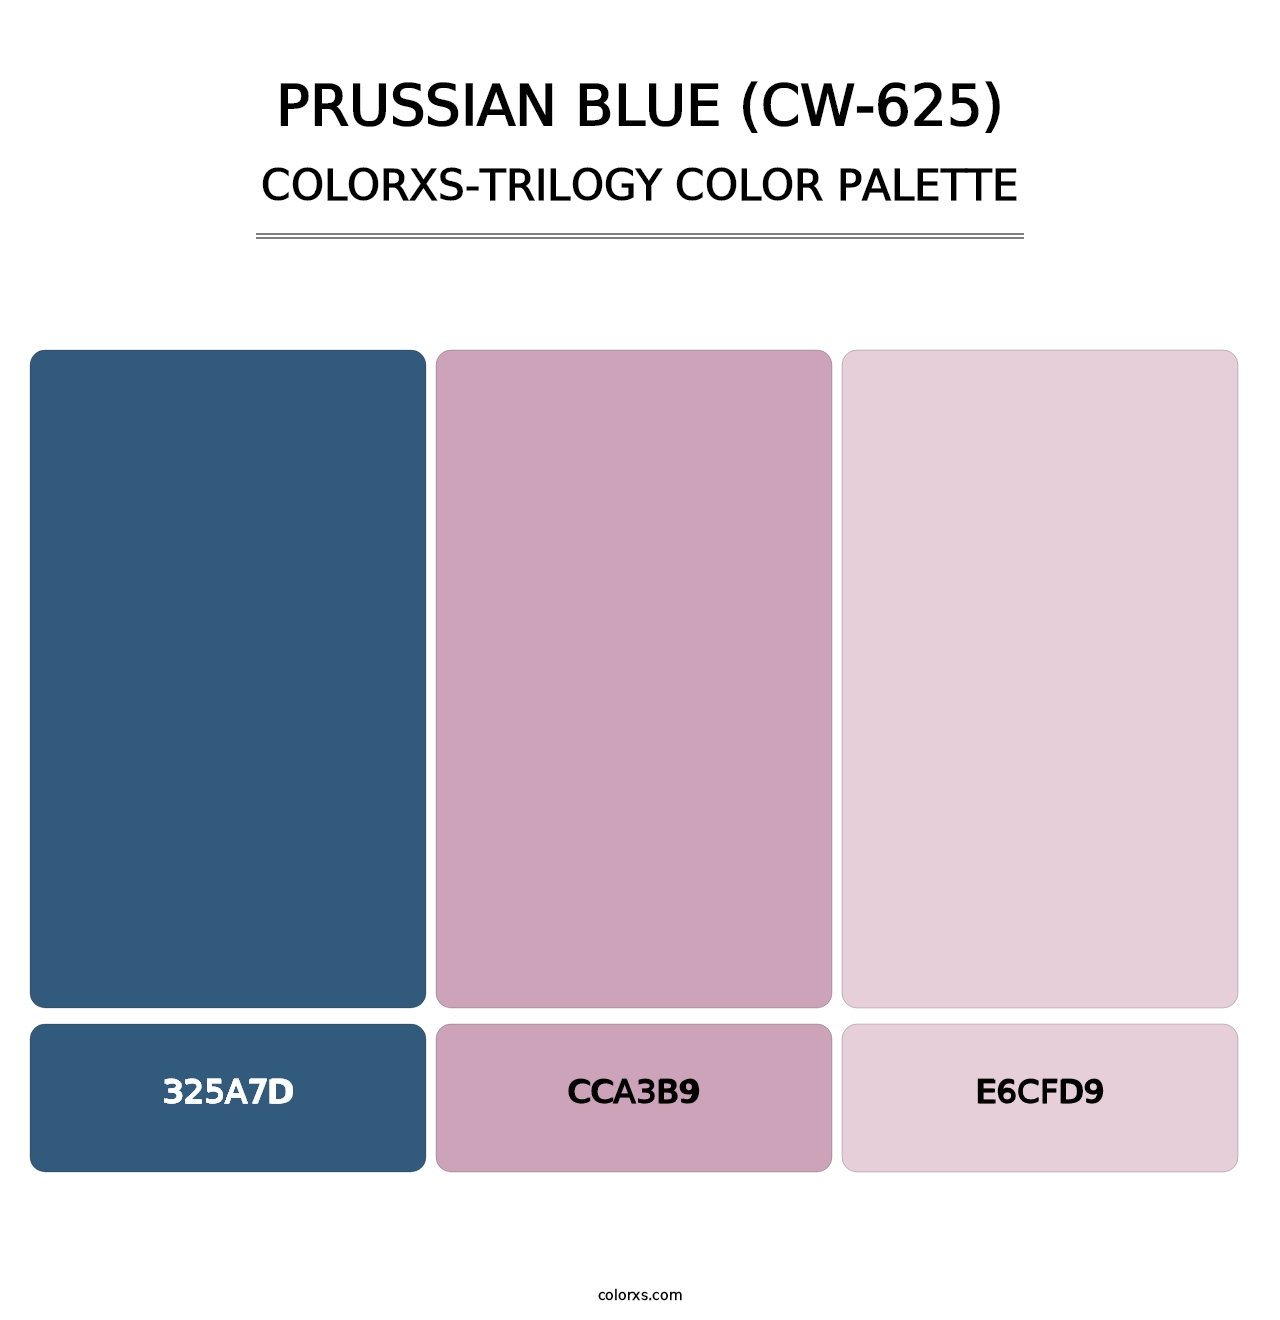 Prussian Blue (CW-625) - Colorxs Trilogy Palette